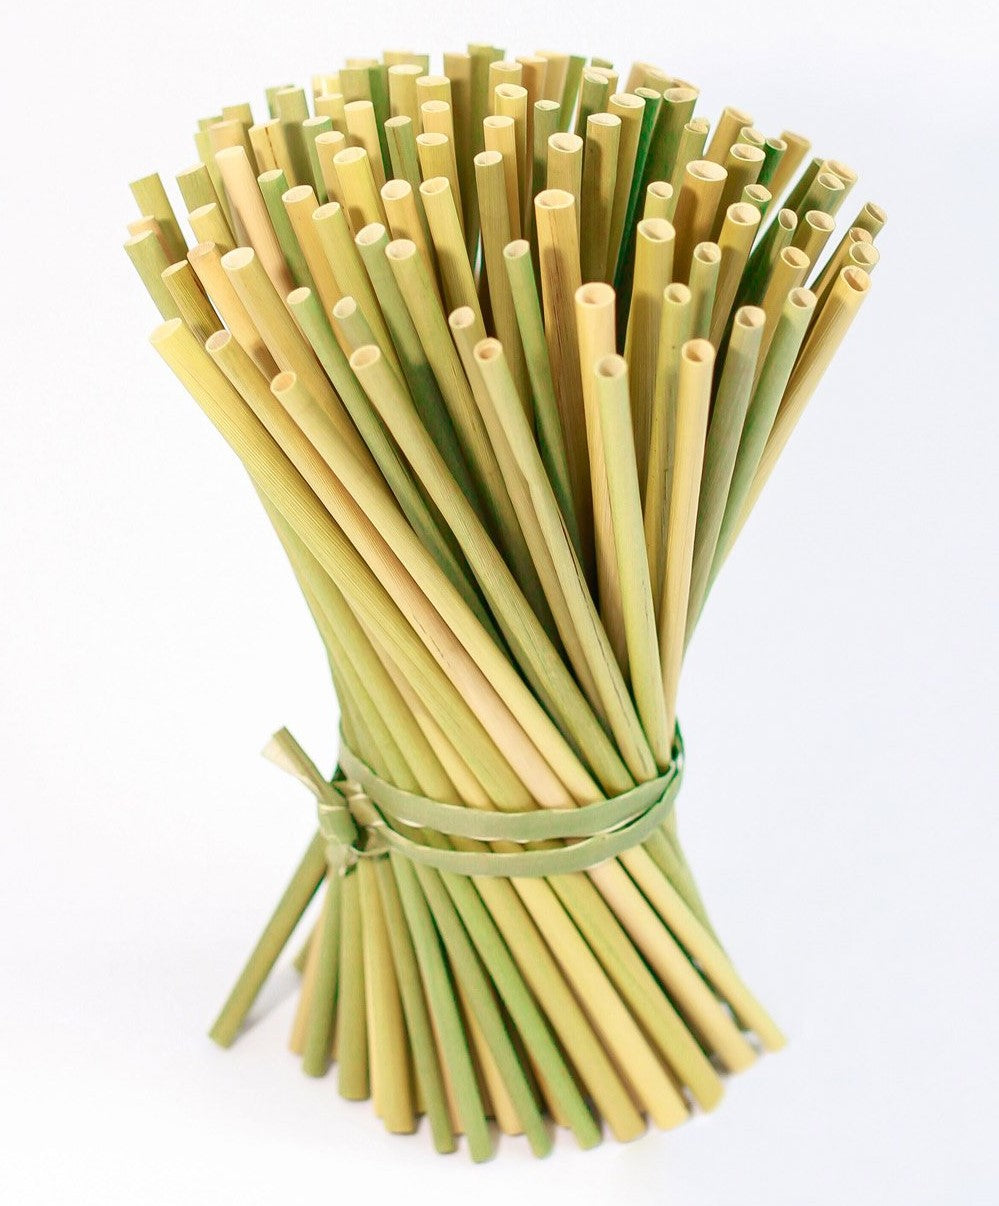 KimEcopak grass straws